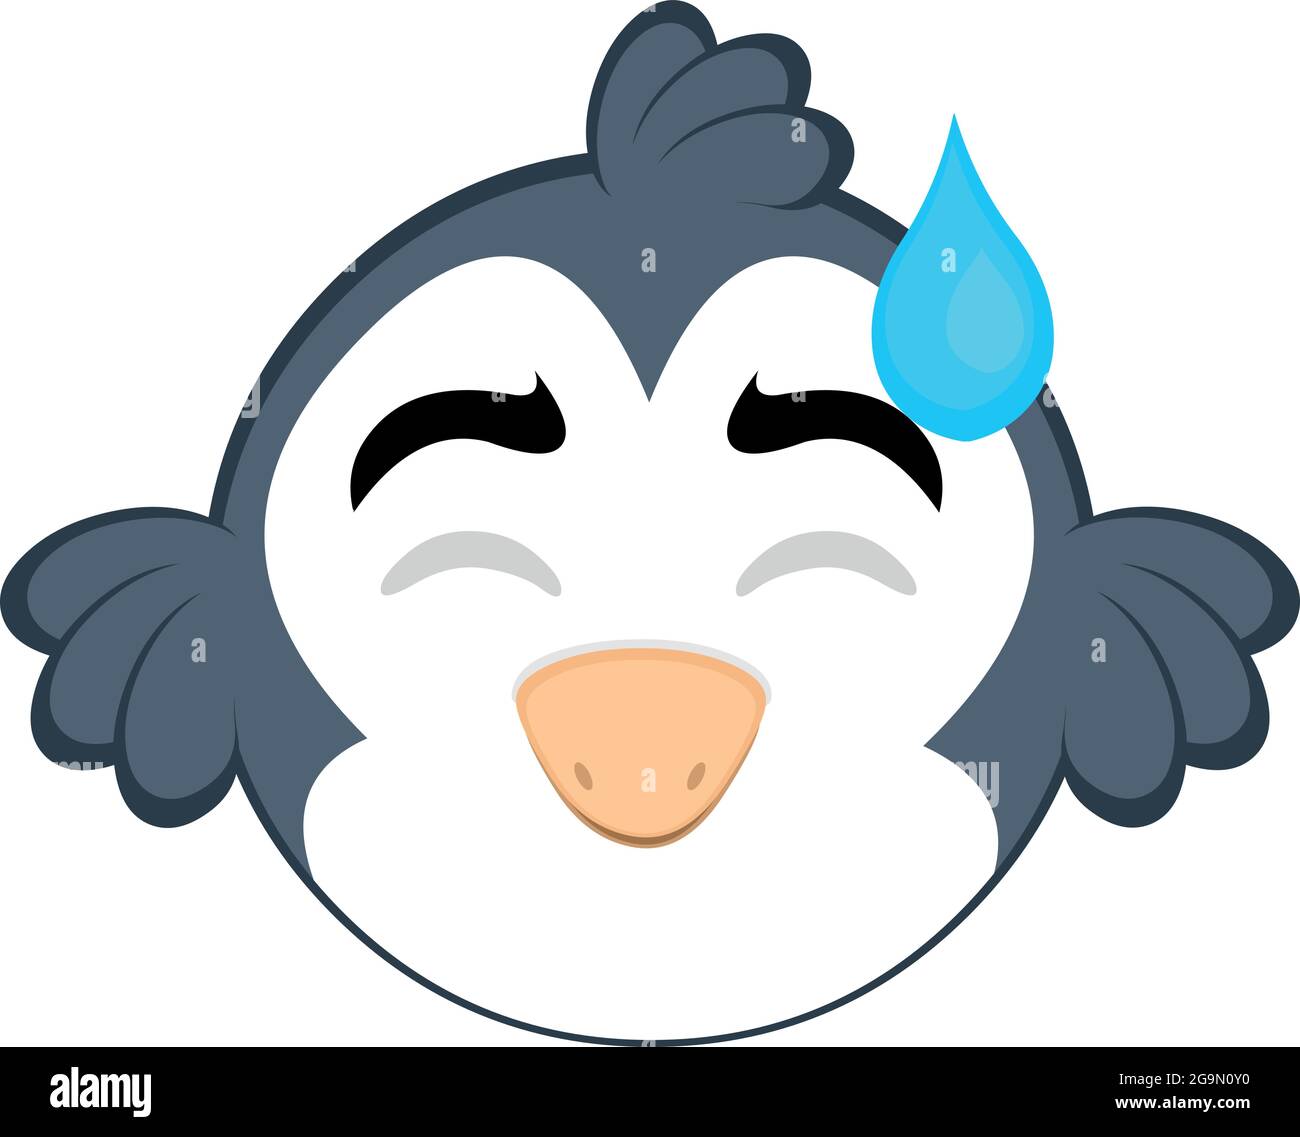 Vecteur émoticône illustration d'un oiseau de dessin animé avec une expression de la honte et une chute de sa tête Illustration de Vecteur